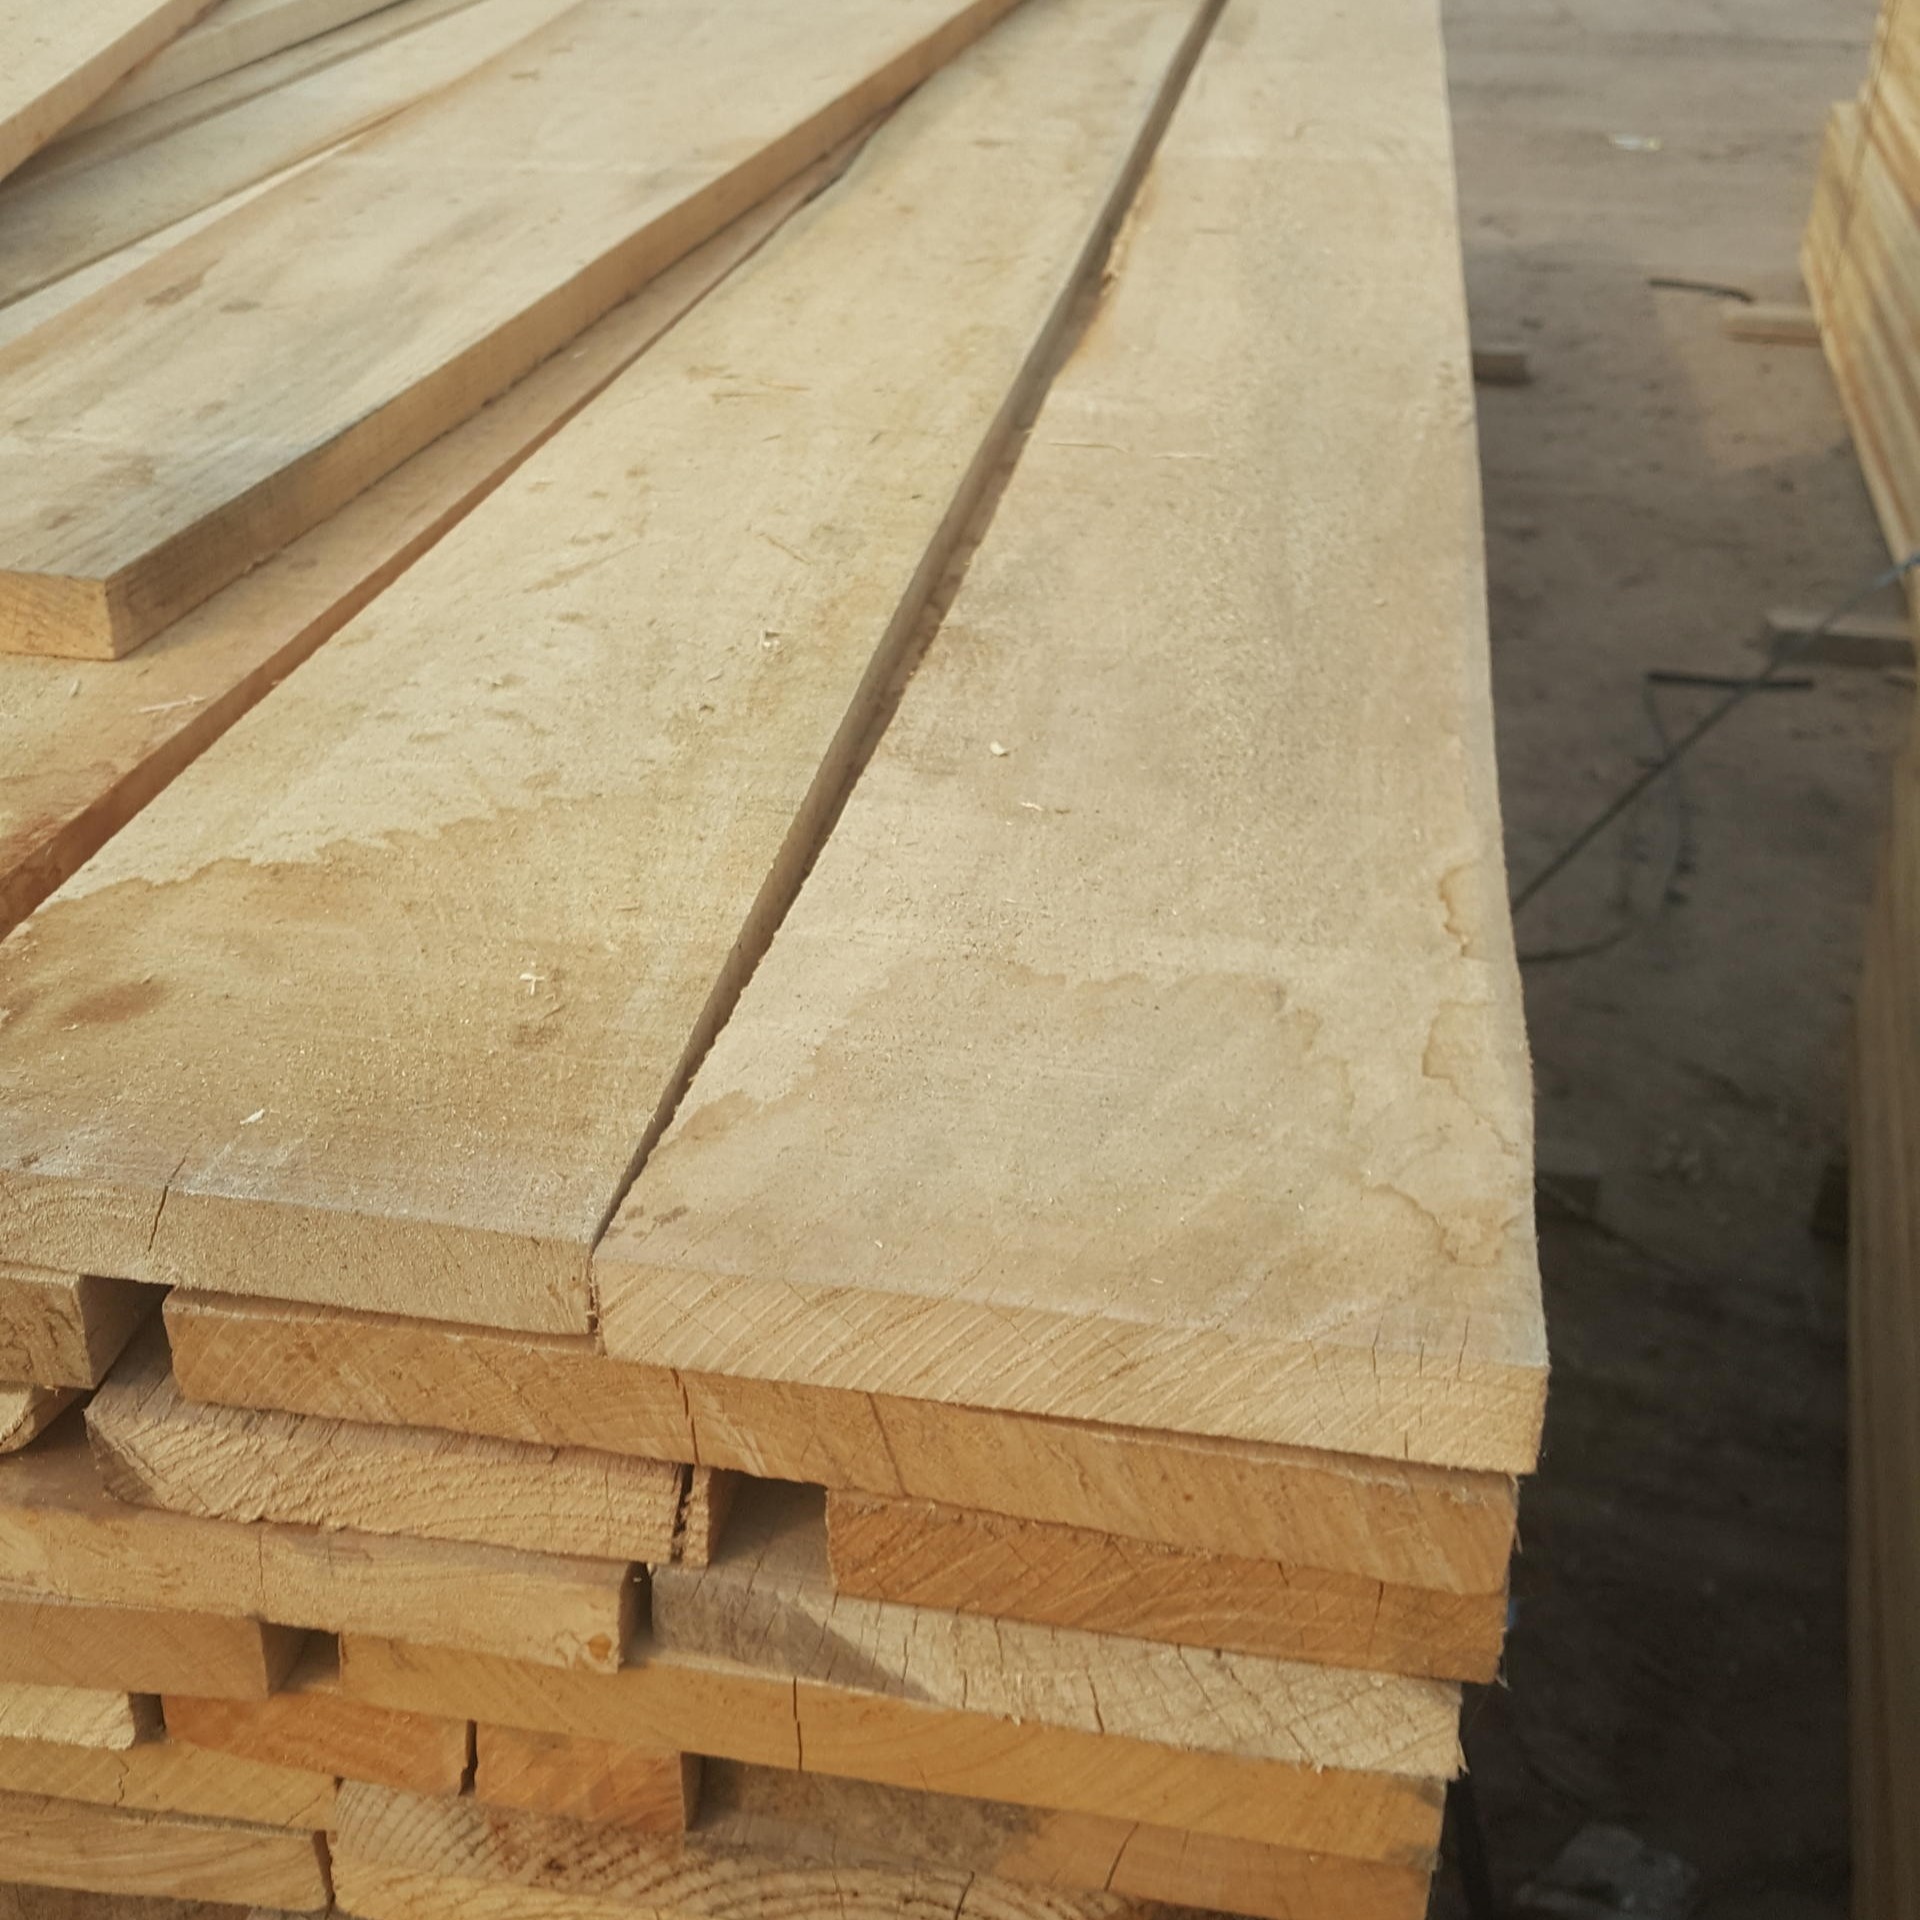 白椿木 烘干板材 供应 价格 厂家 椿木板材 建淼木业